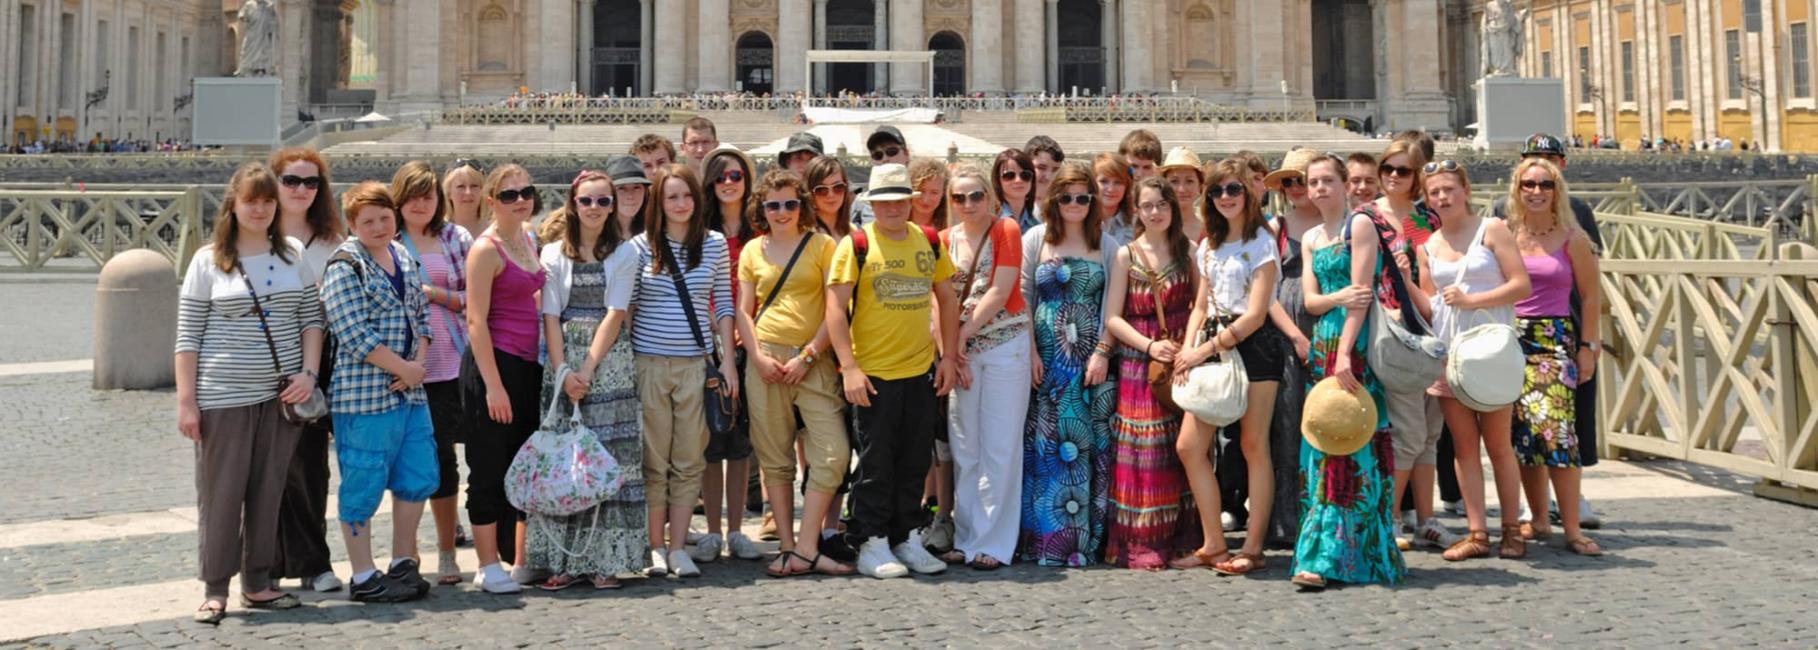 rome cultural trip header nst